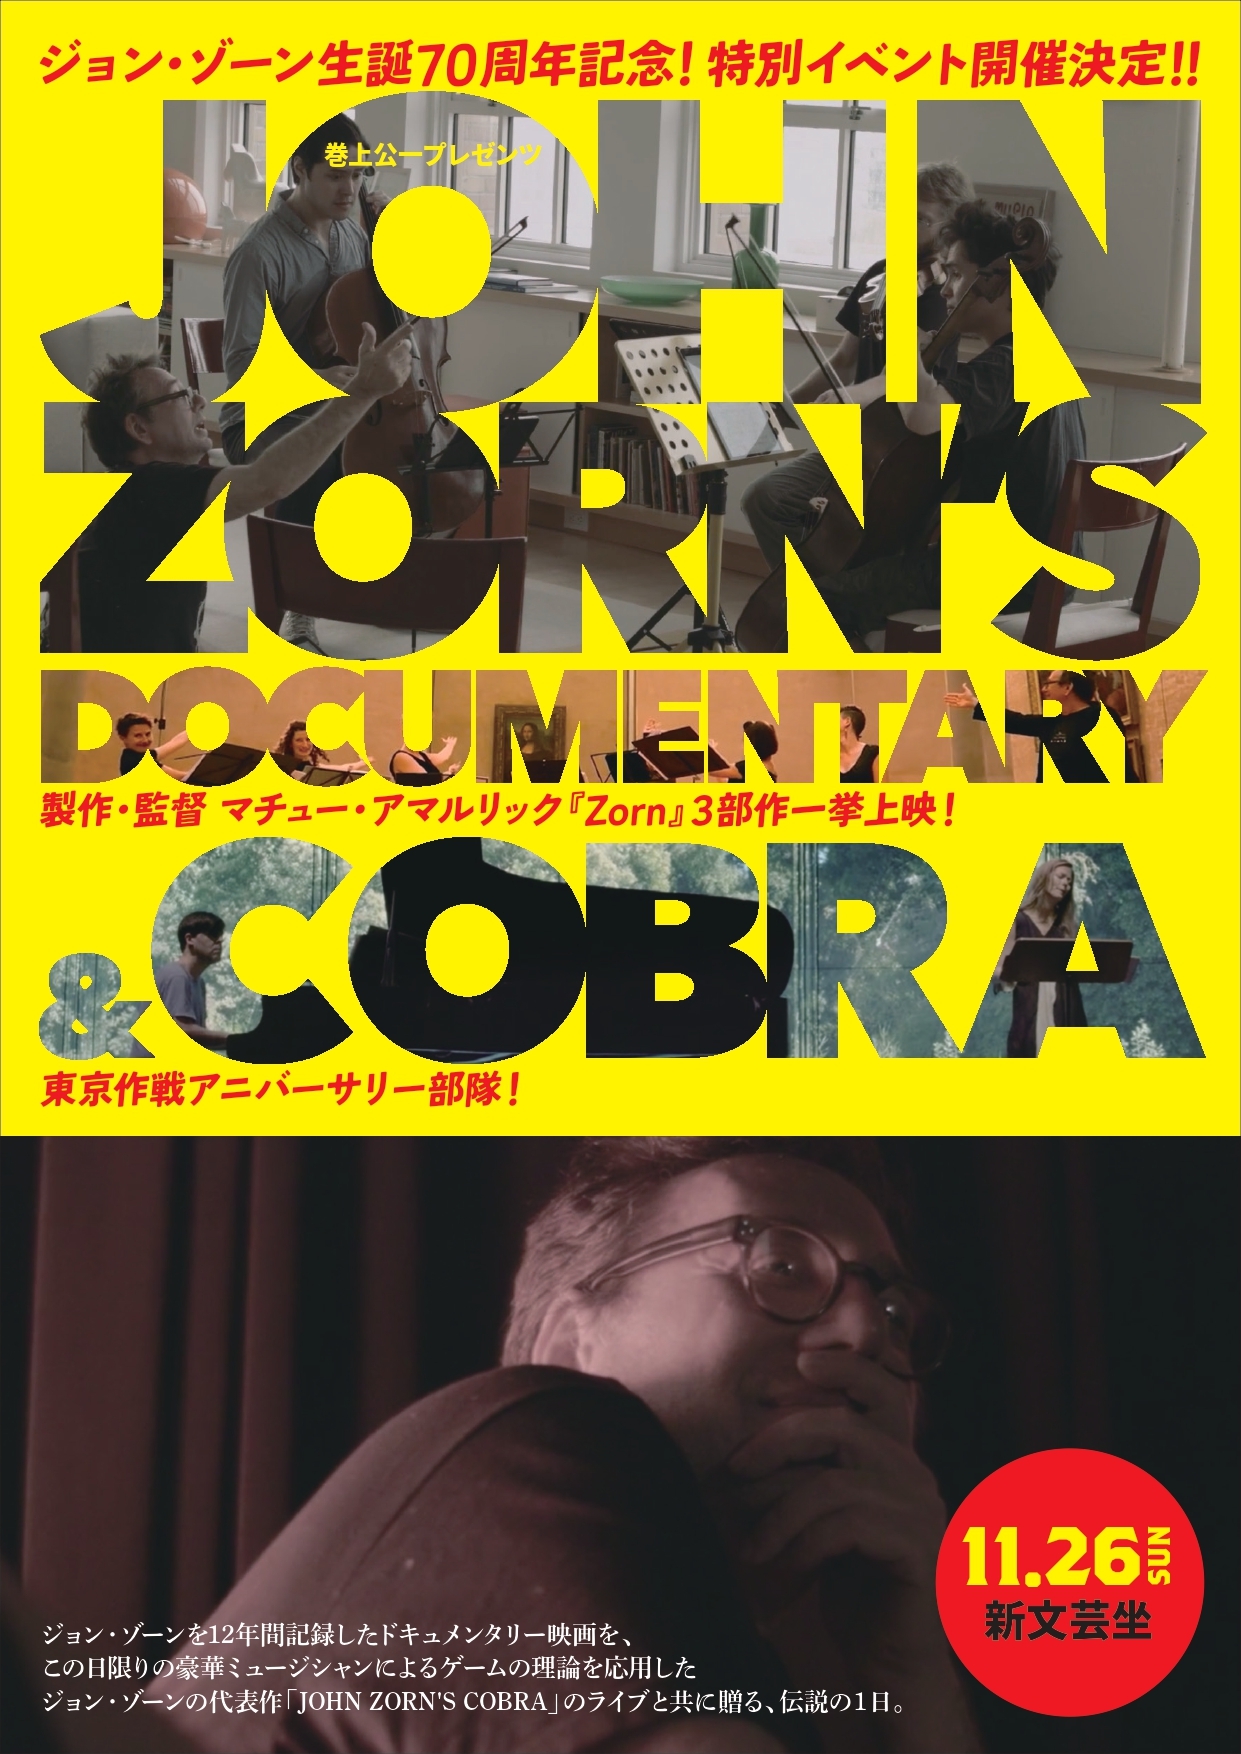 ジョン・ゾーン生誕70周年記念イベント「JOHN ZORN’S DOCUMENTARY & COBRA」開催 マチュー・アマルリック監督のドキュメント上映